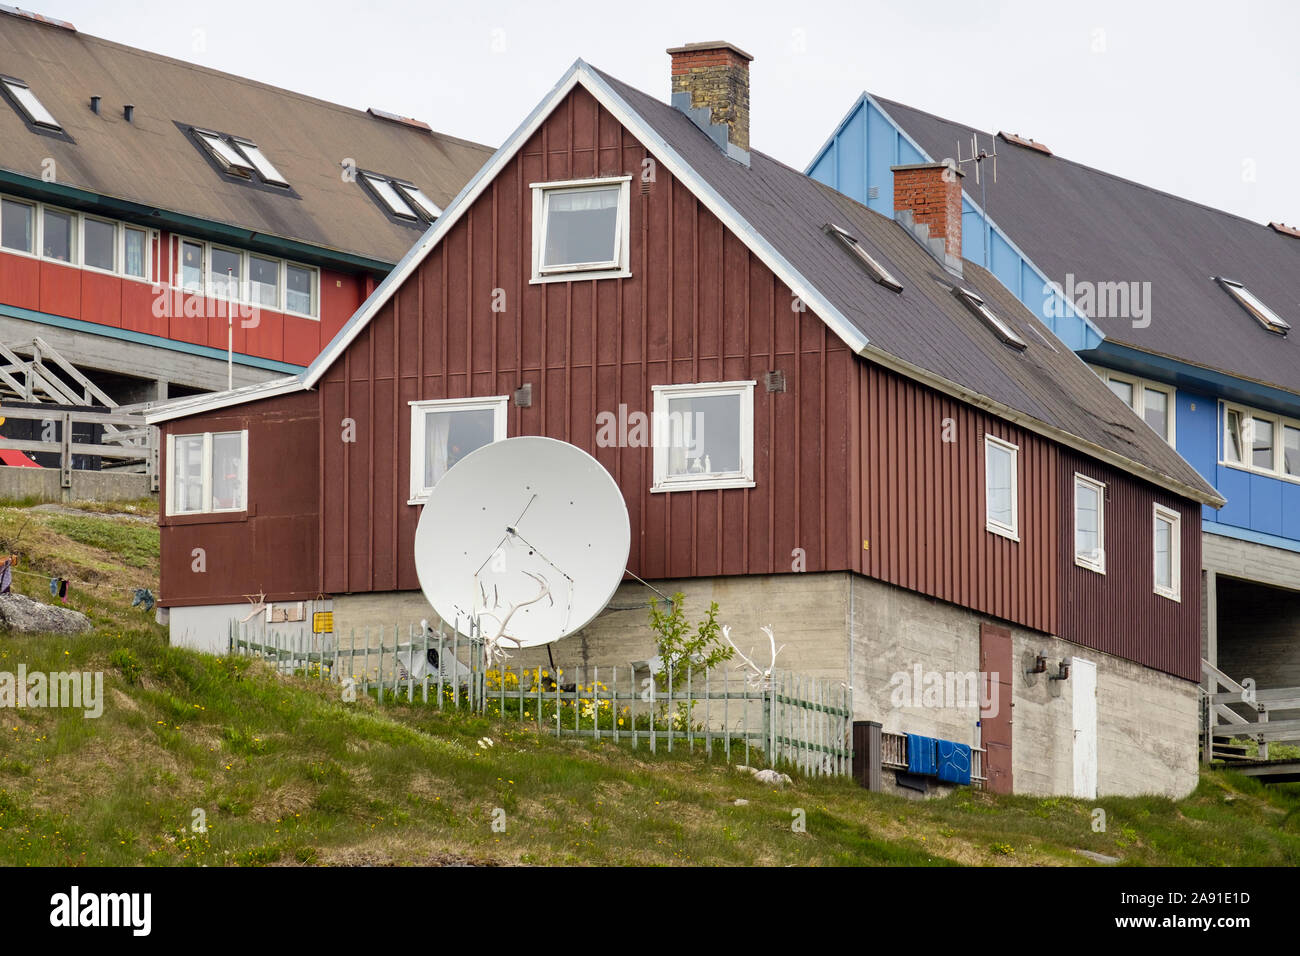 Grande antenne satellite à l'extérieur d'une maison typique des Inuits construit de bois et béton. Paamiut (Frederikshåb), Sermersooq, Groenland Banque D'Images